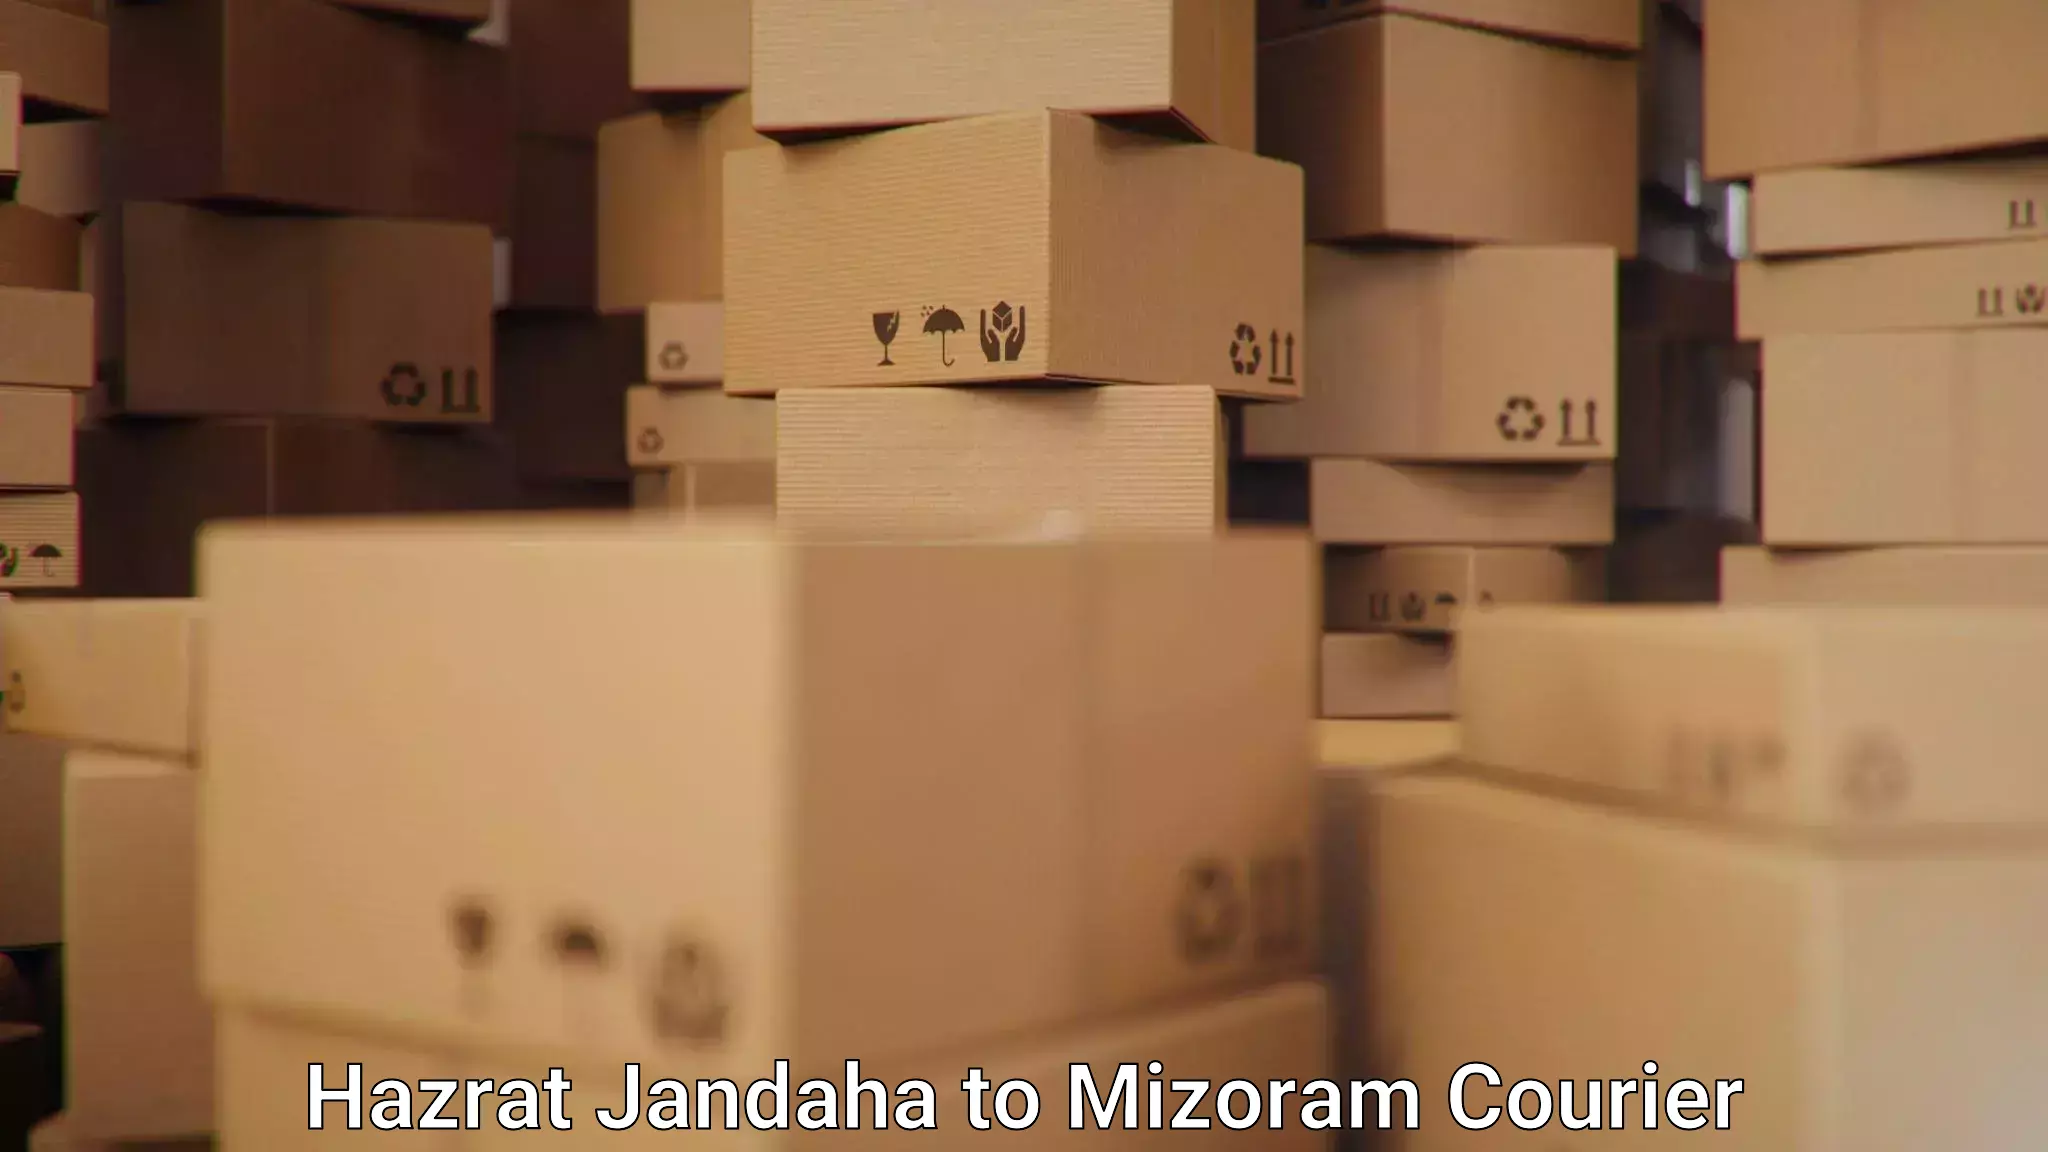 Courier service comparison Hazrat Jandaha to Chawngte